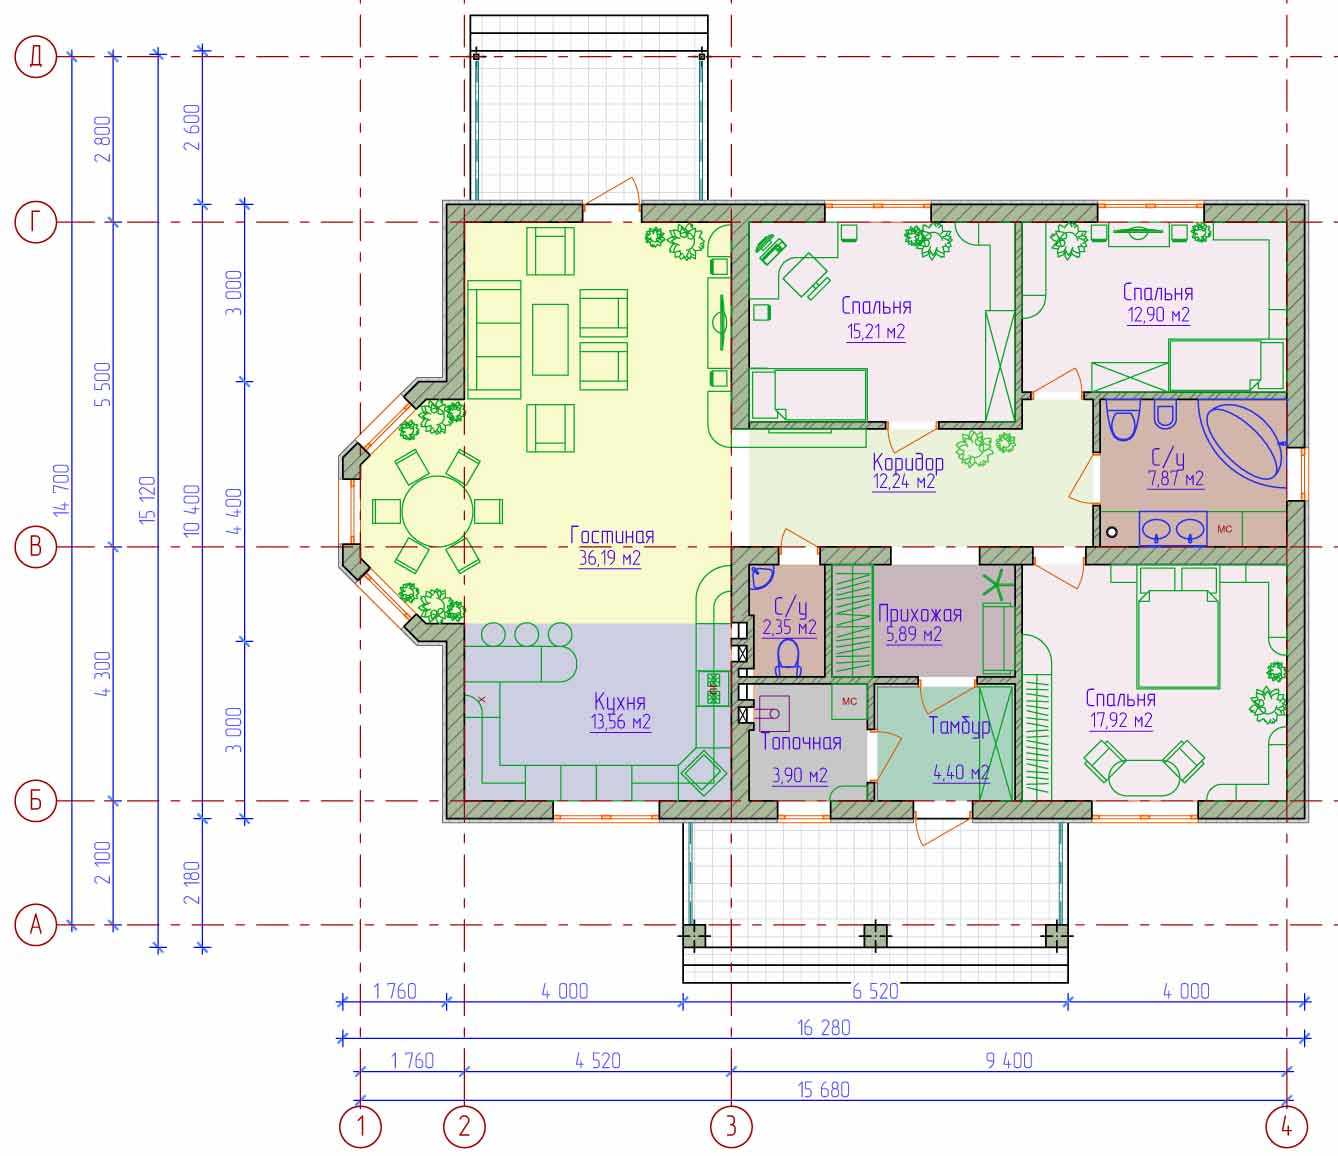 Планы и чертежи домов с размерами бесплатно: как можно нарисовать чертеж онлайн в программах